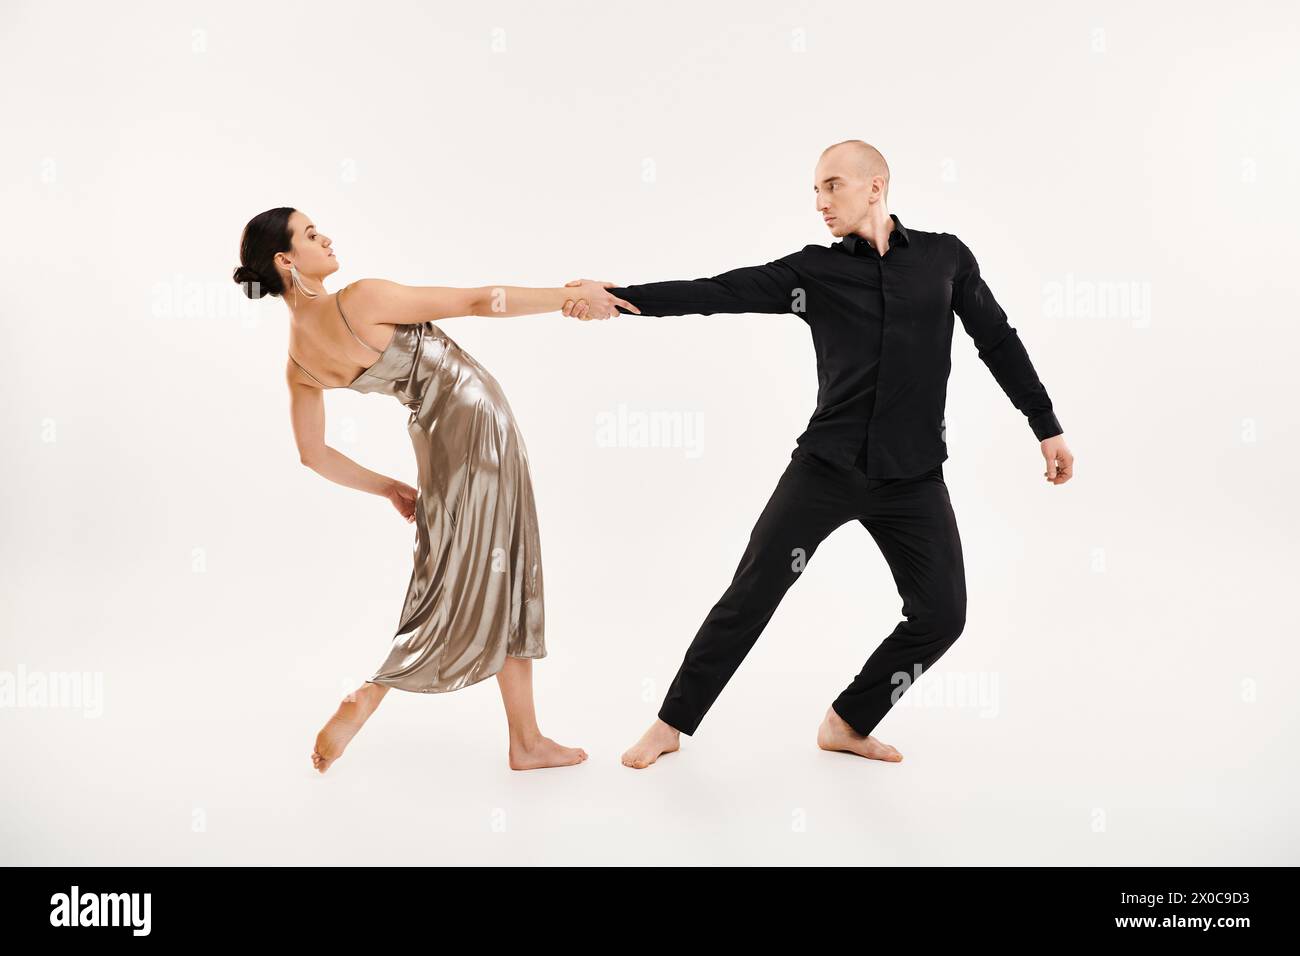 Ein junger Mann in Schwarz und eine junge Frau in einem glänzenden silbernen Kleid mit akrobatischen Tanzbewegungen in einem Studio vor weißem Hintergrund. Stockfoto